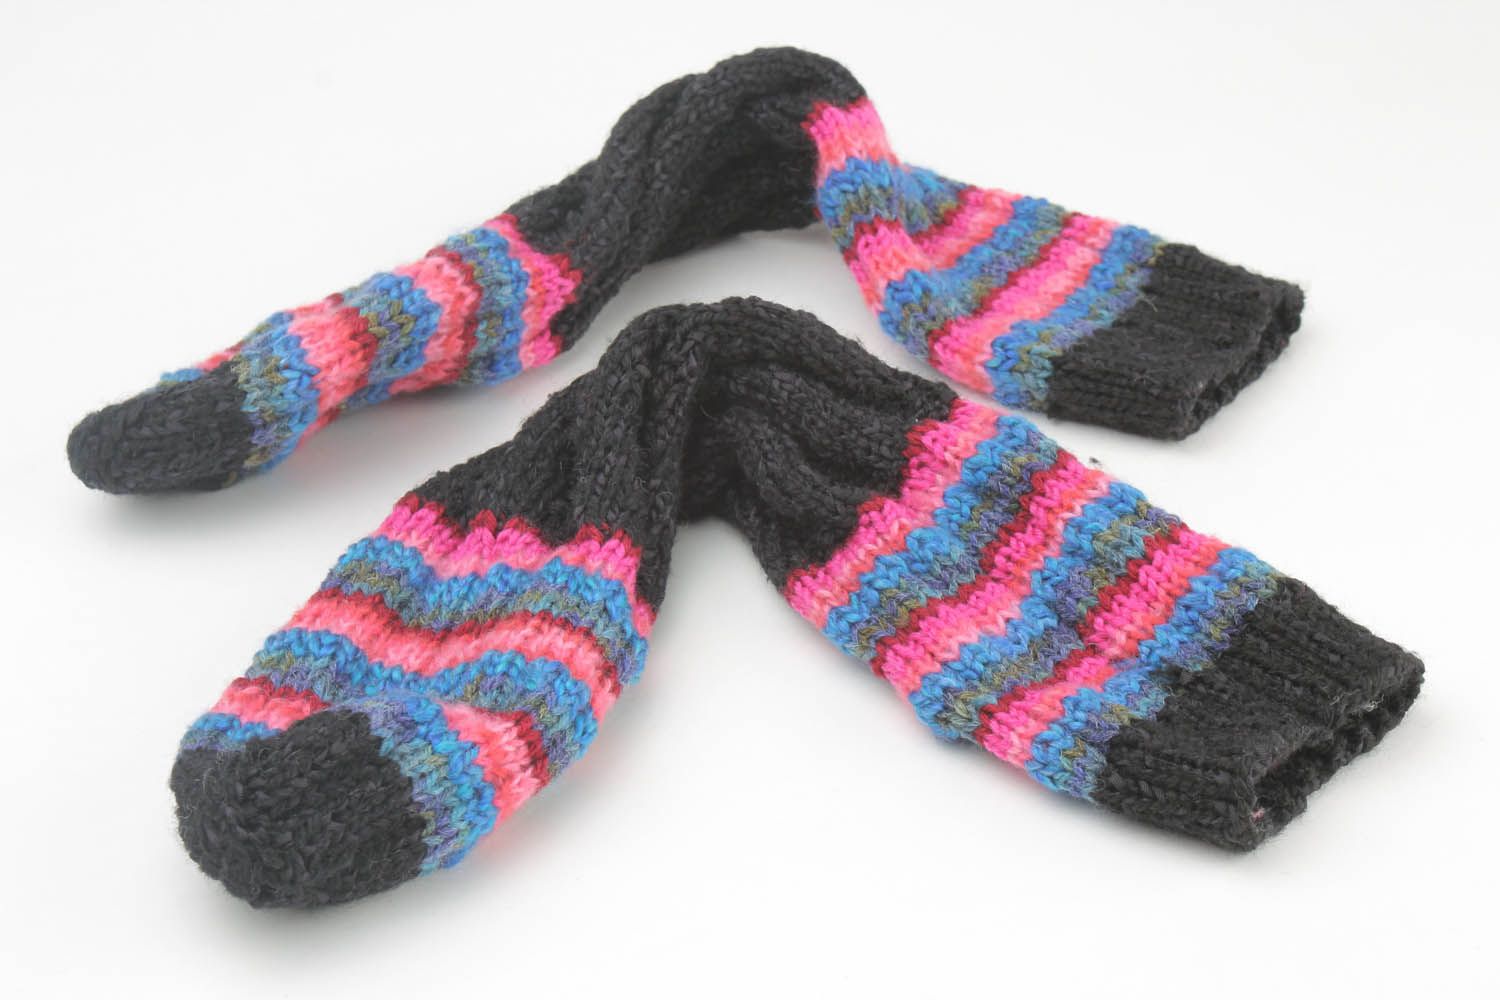 Chaussettes faites main tricotées rayées photo 4